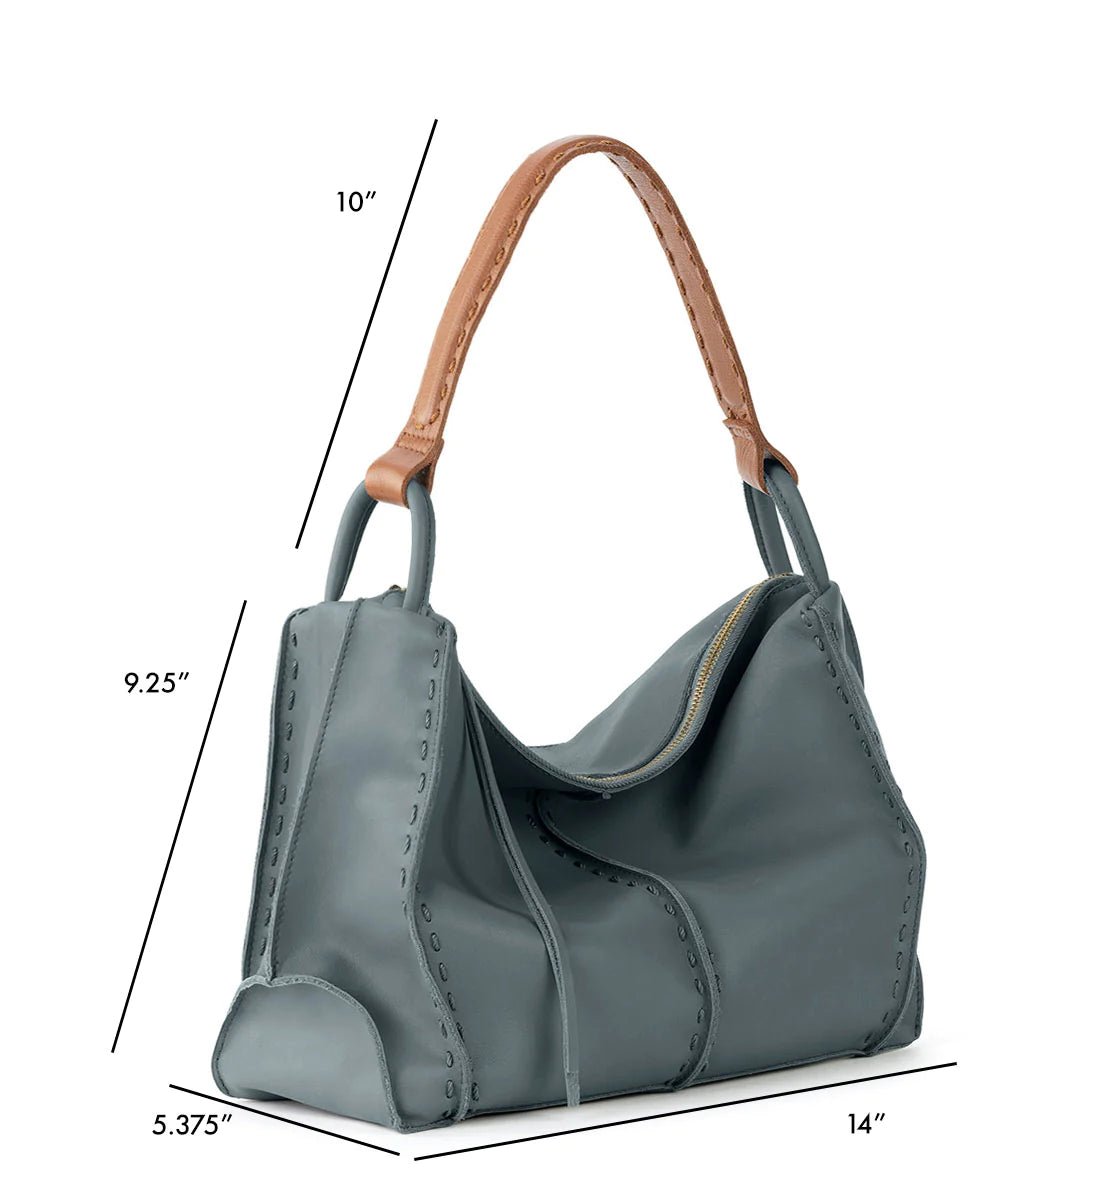 LEATHER HOBO Bag BROWN Oversize Shoulder Bag Everyday Leather Purse Soft  Leather Handbag for Women - Etsy | Soft leather handbags, Hobo bag, Bags